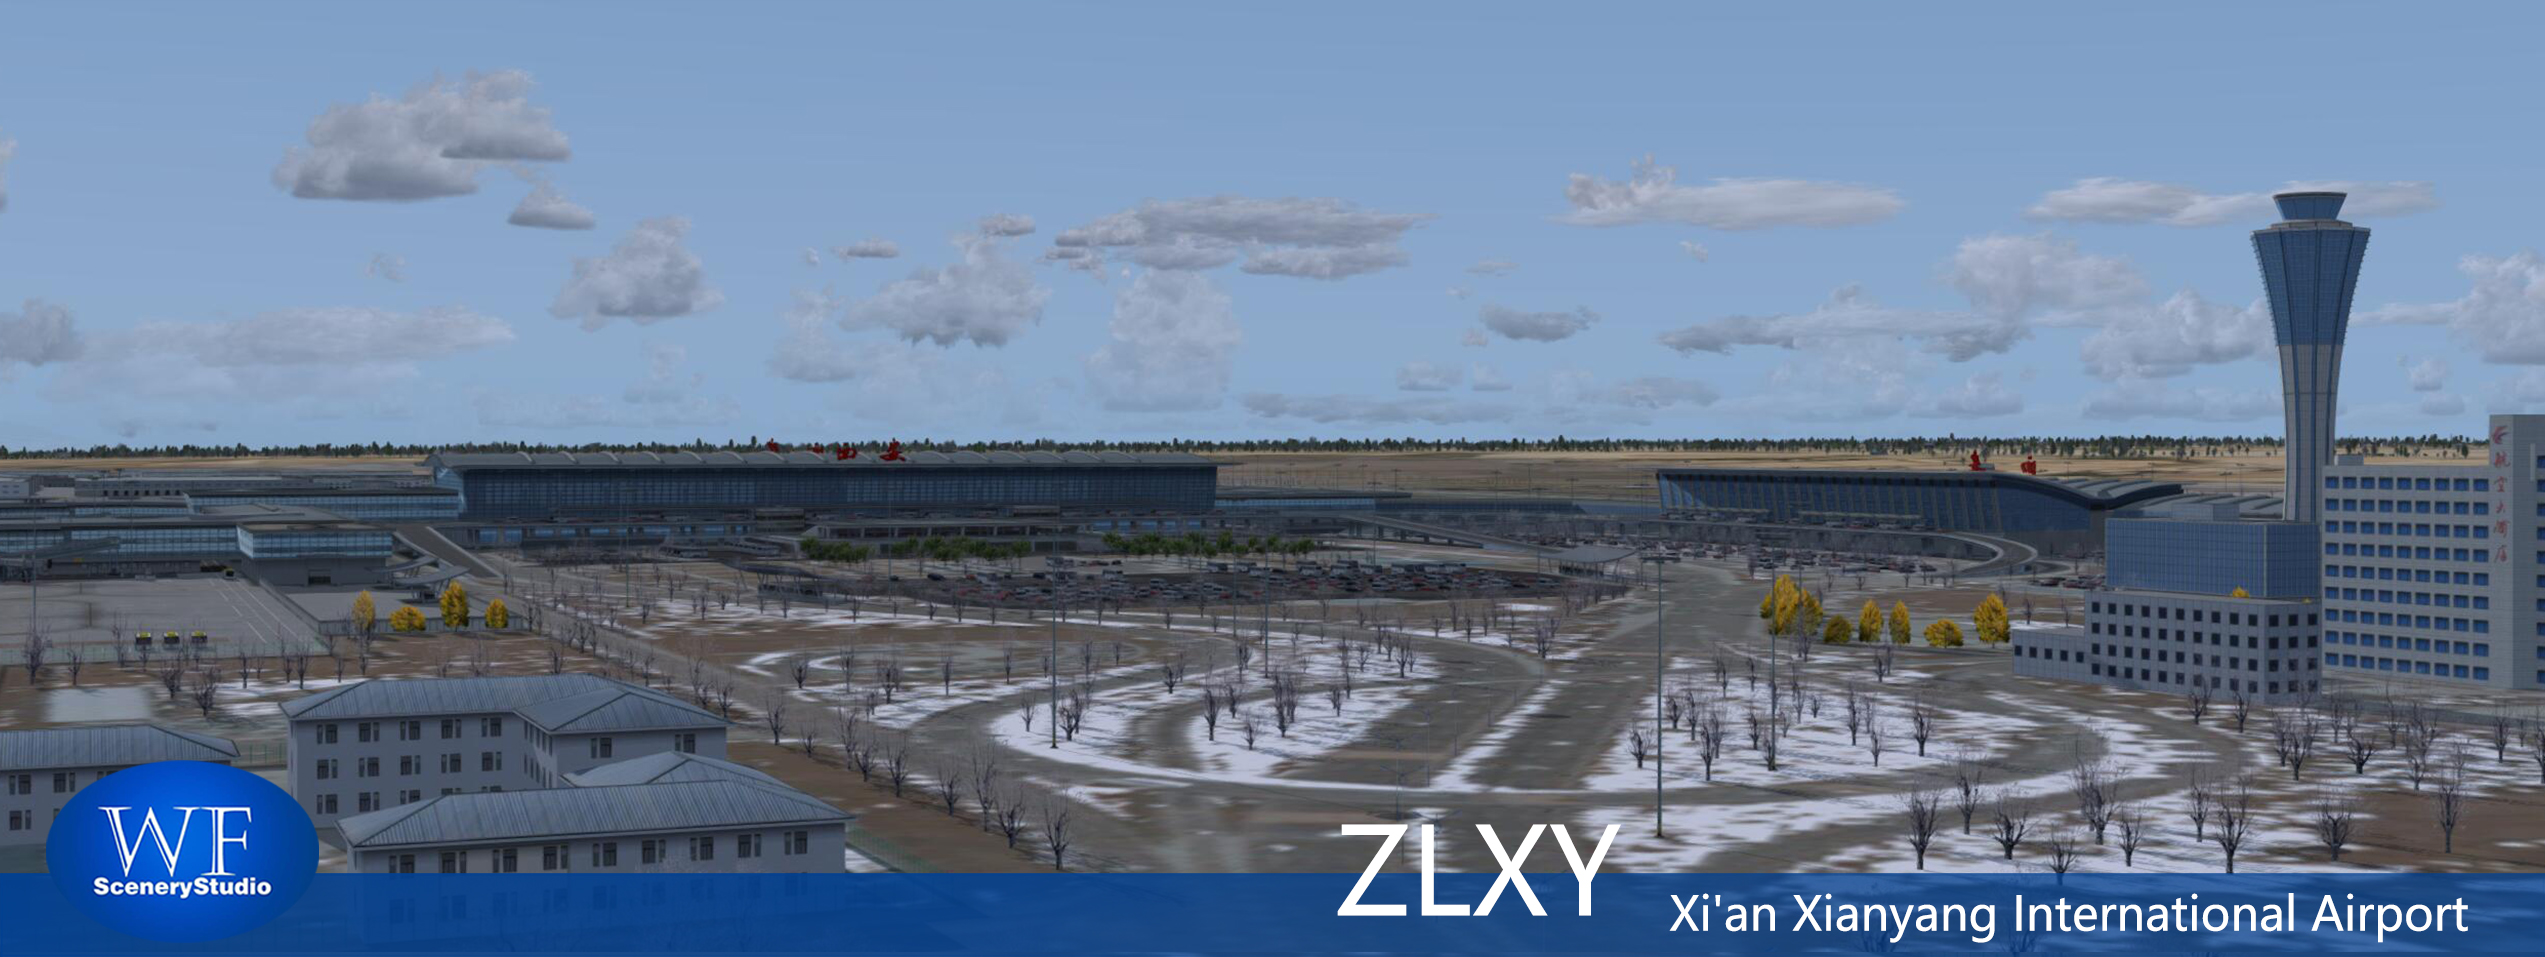 西安咸阳国际机场FSX和P3DV3 版本发布-9031 